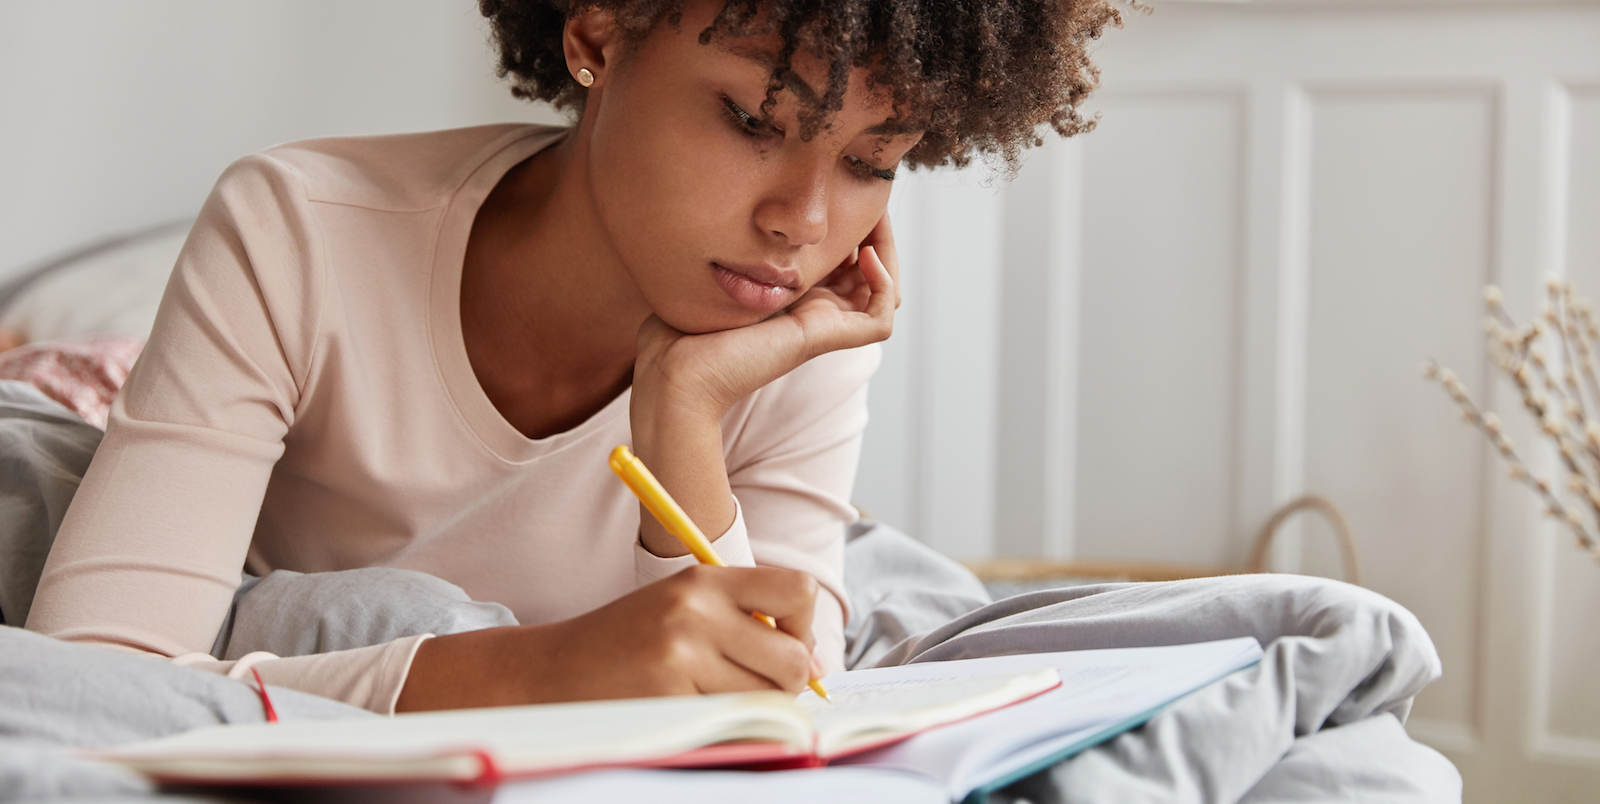 Темнокожая девушка читает книгу. Девушка с ручкой в руке. Фото задумчивого студента по дизайну девушка. Writing collection